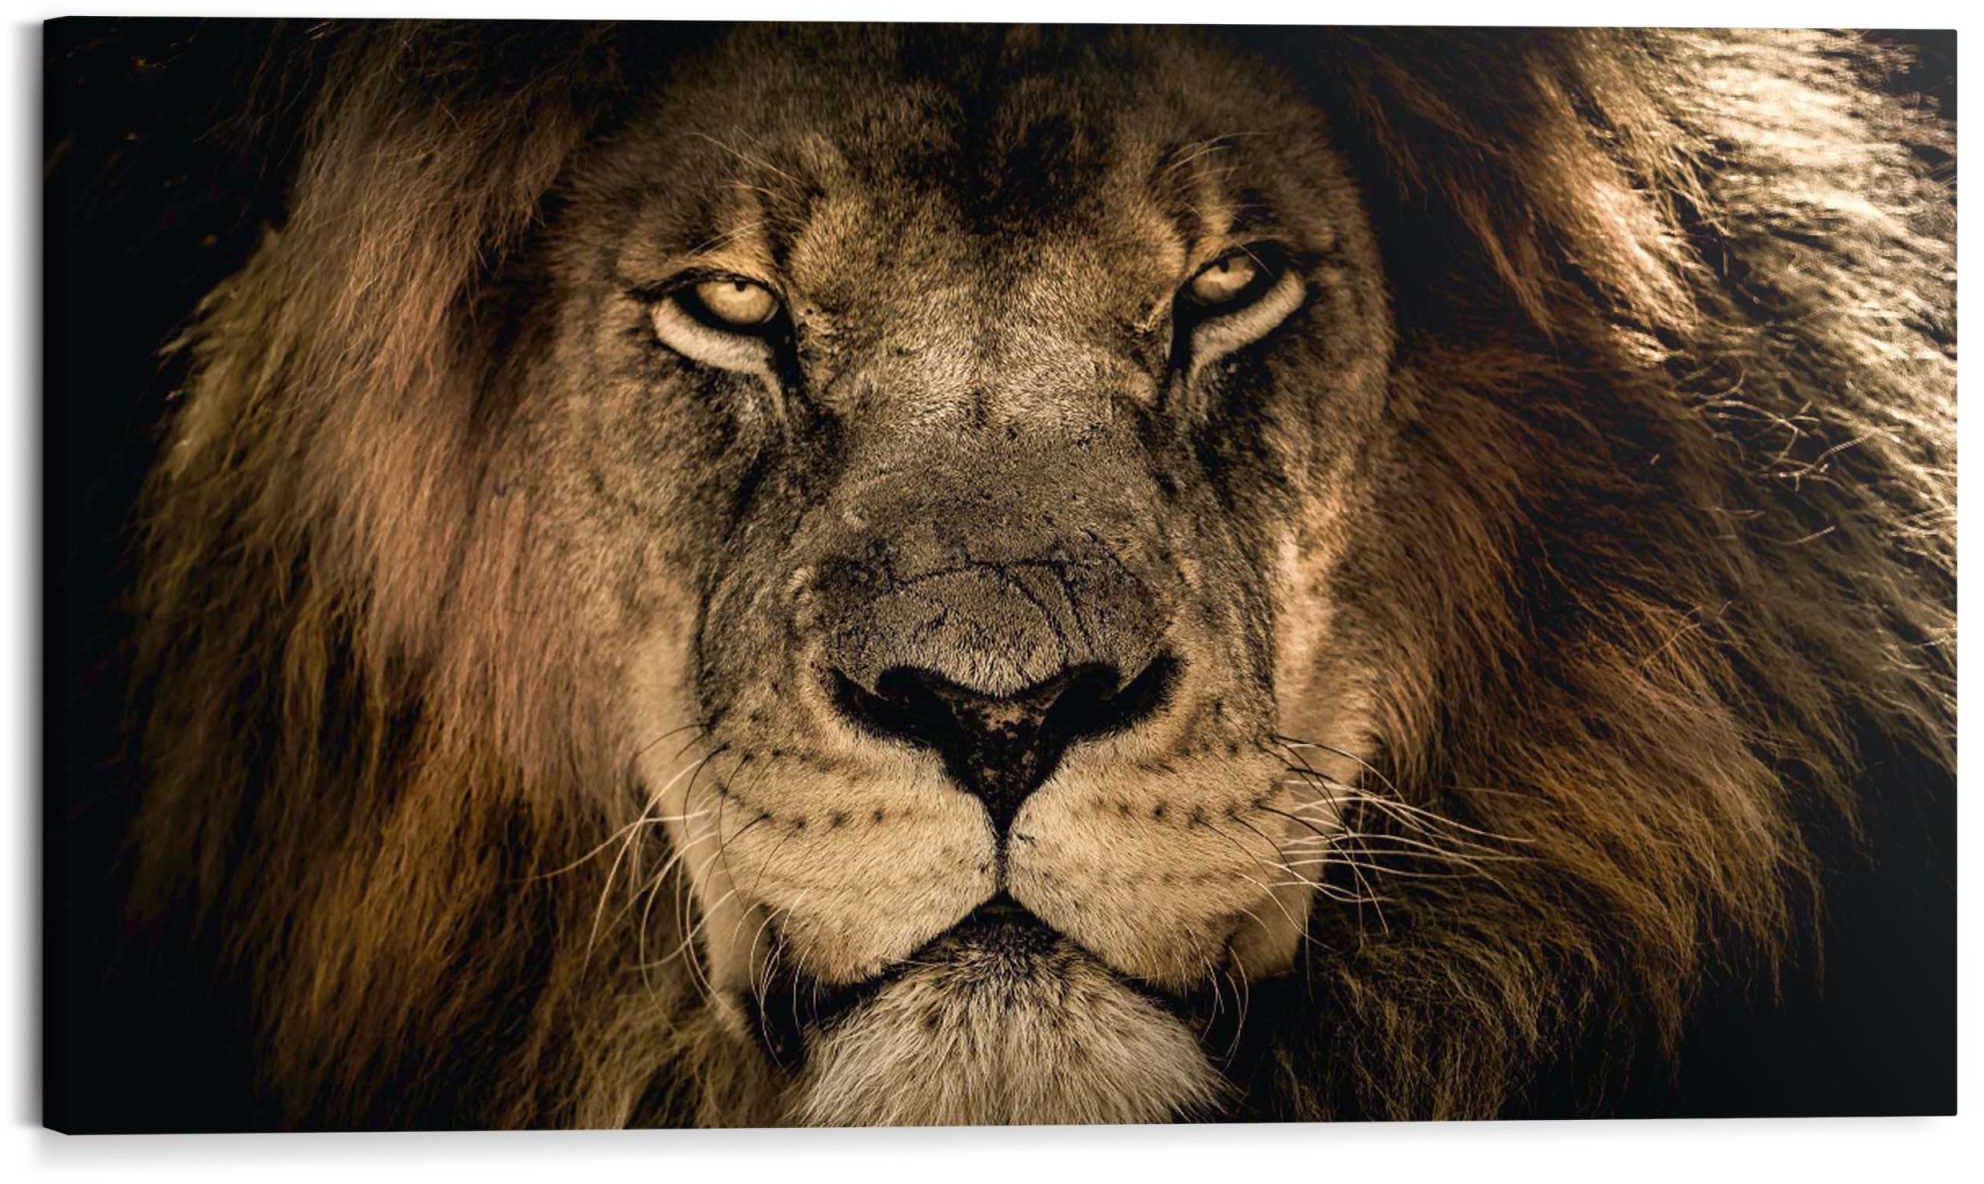 Kunstdruck »Löwe«